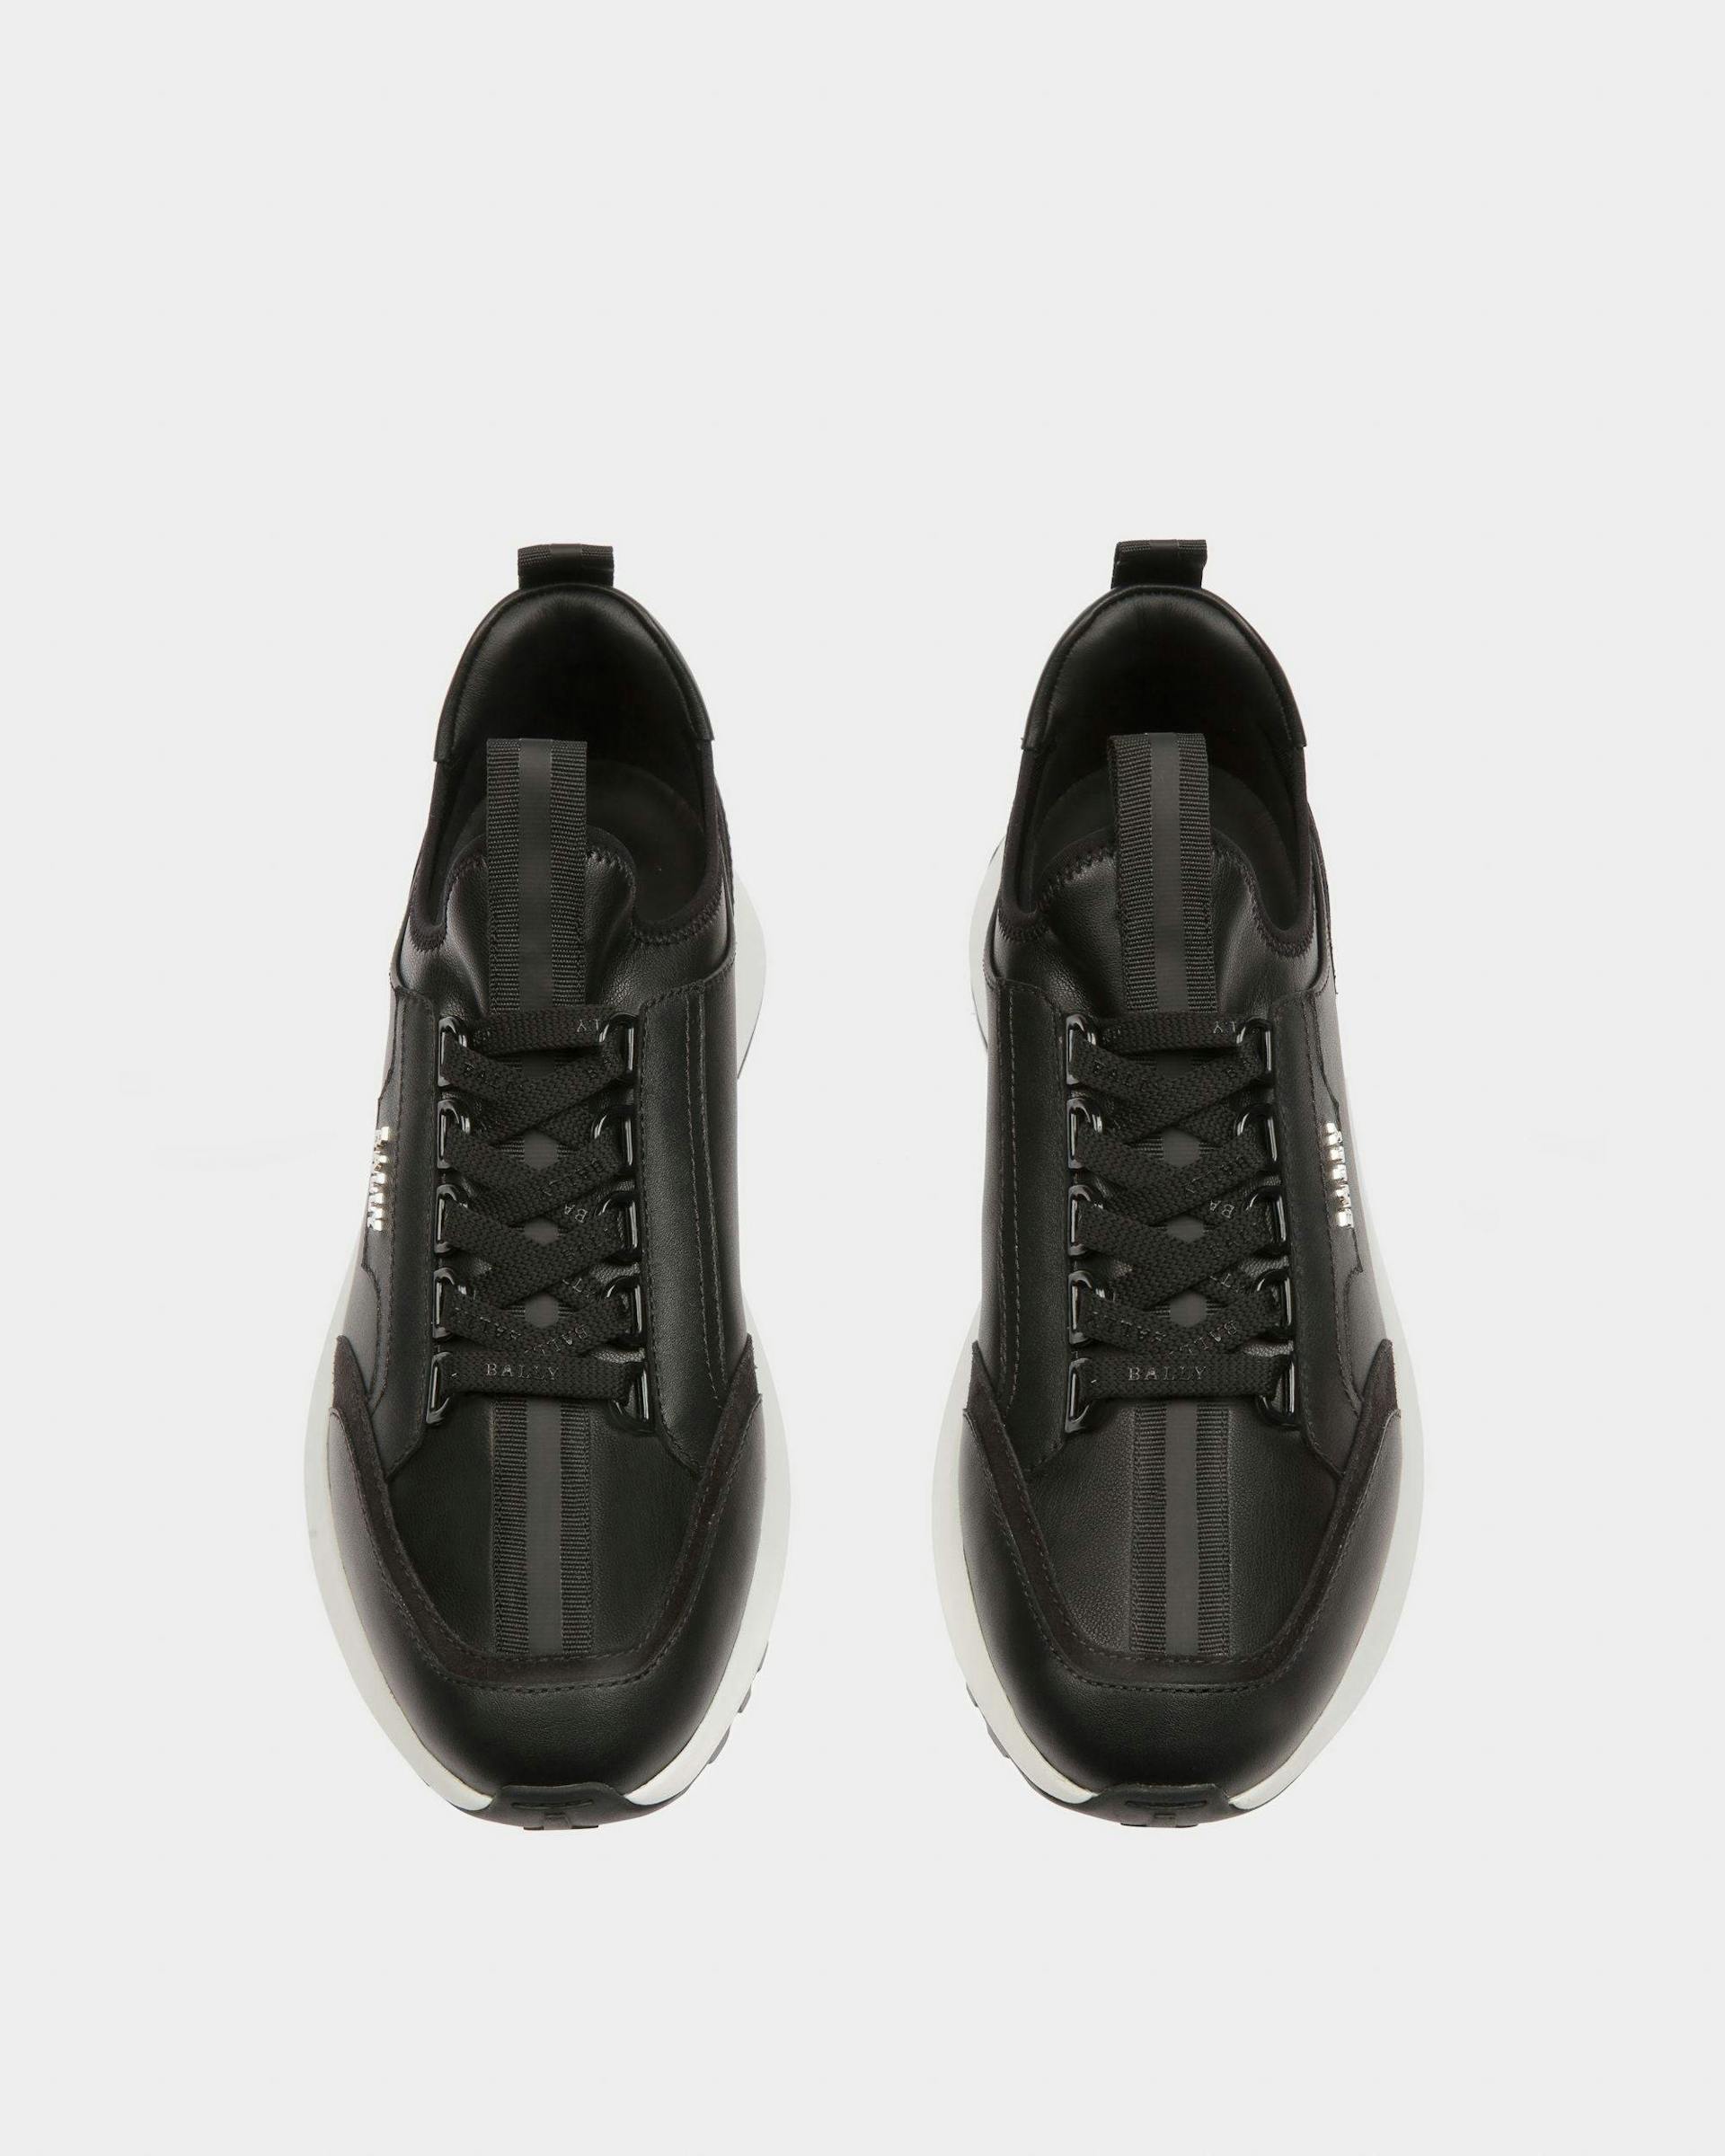 Deven Leather Sneakers In Black - Women's - Bally - 03